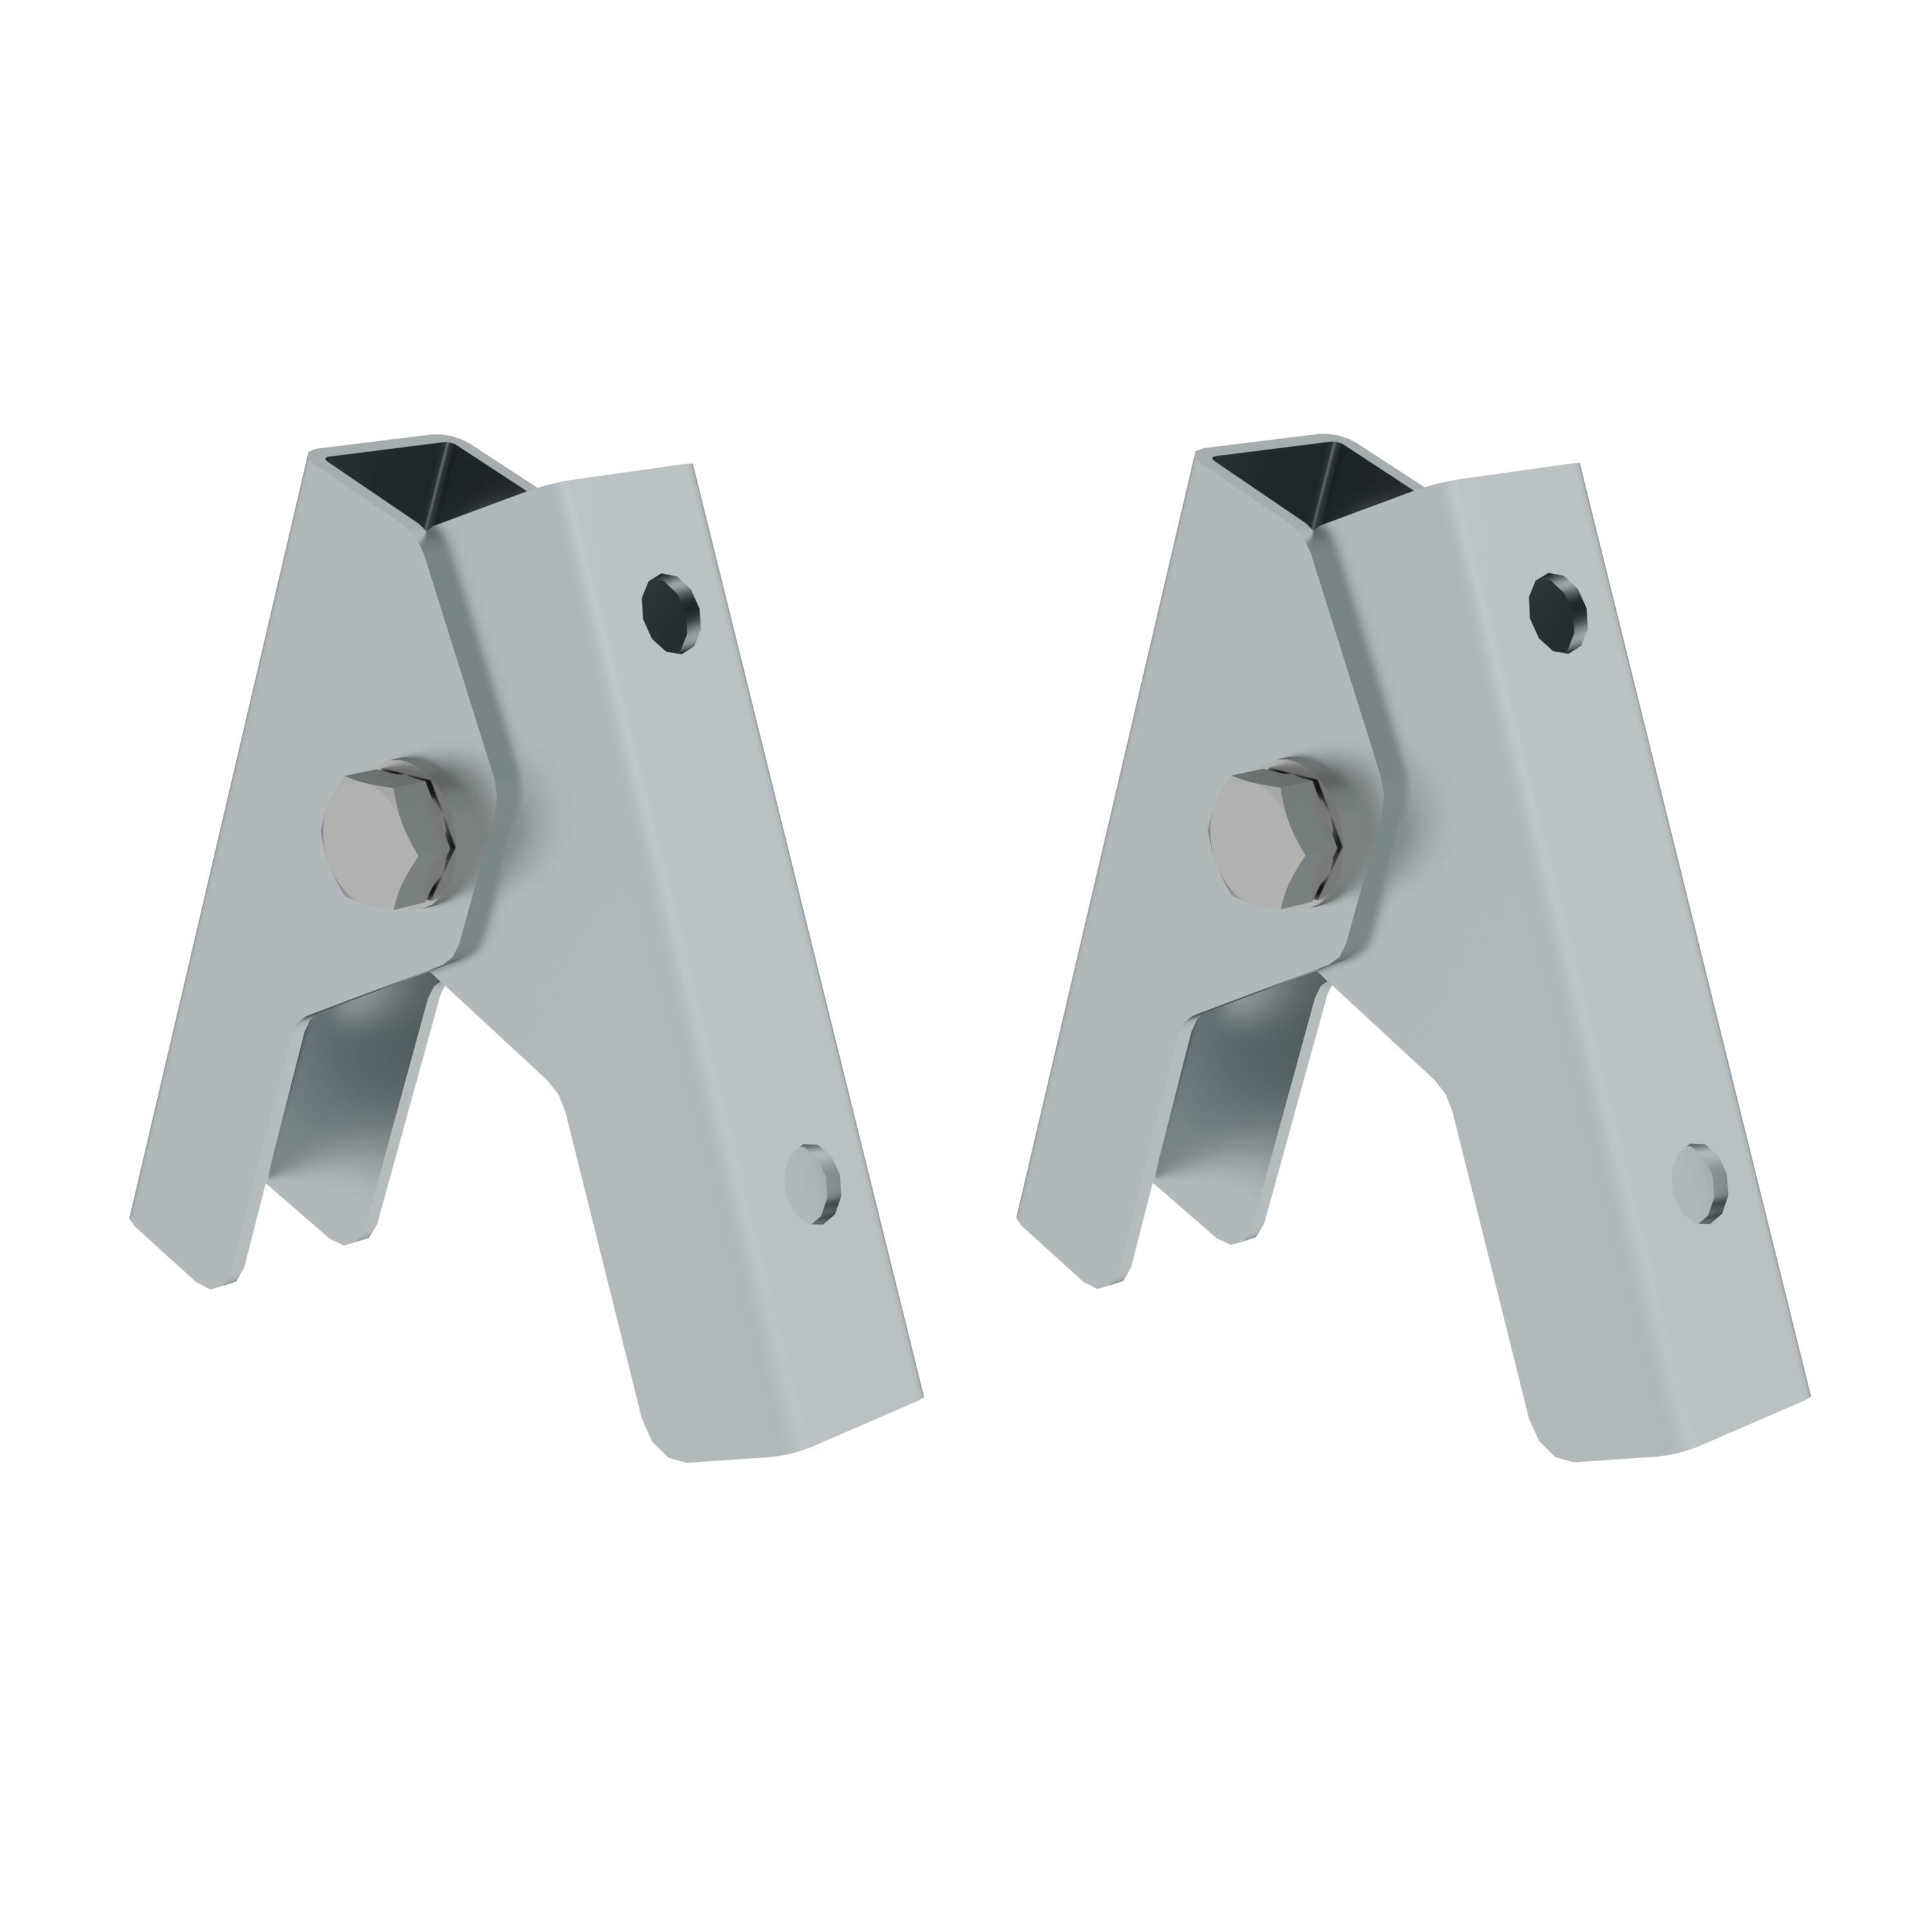 Leiterscharnier für Sprossen-Stehleitern aus Aluminium oder GFK/Alu